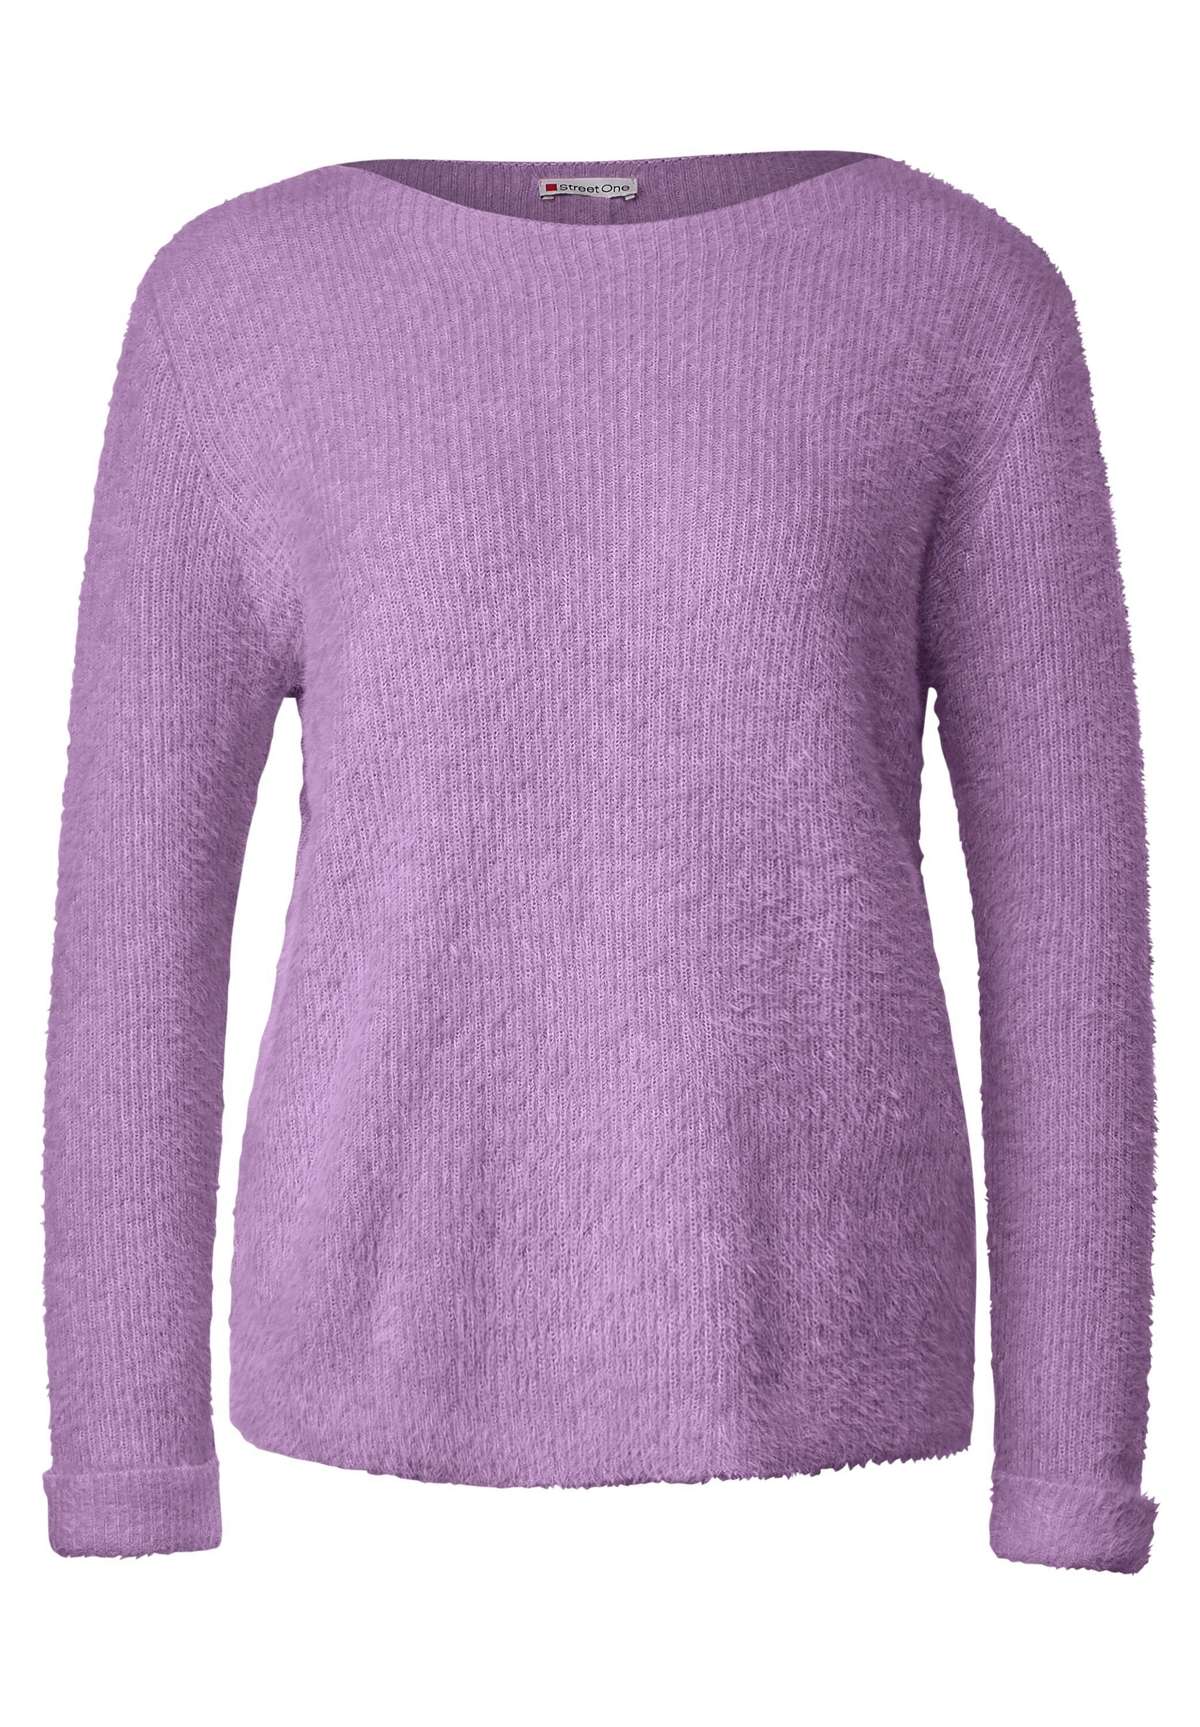 Вязаный свитер из перьевой пряжи нежно-сиреневого цвета (1 штука) Нет в наличии